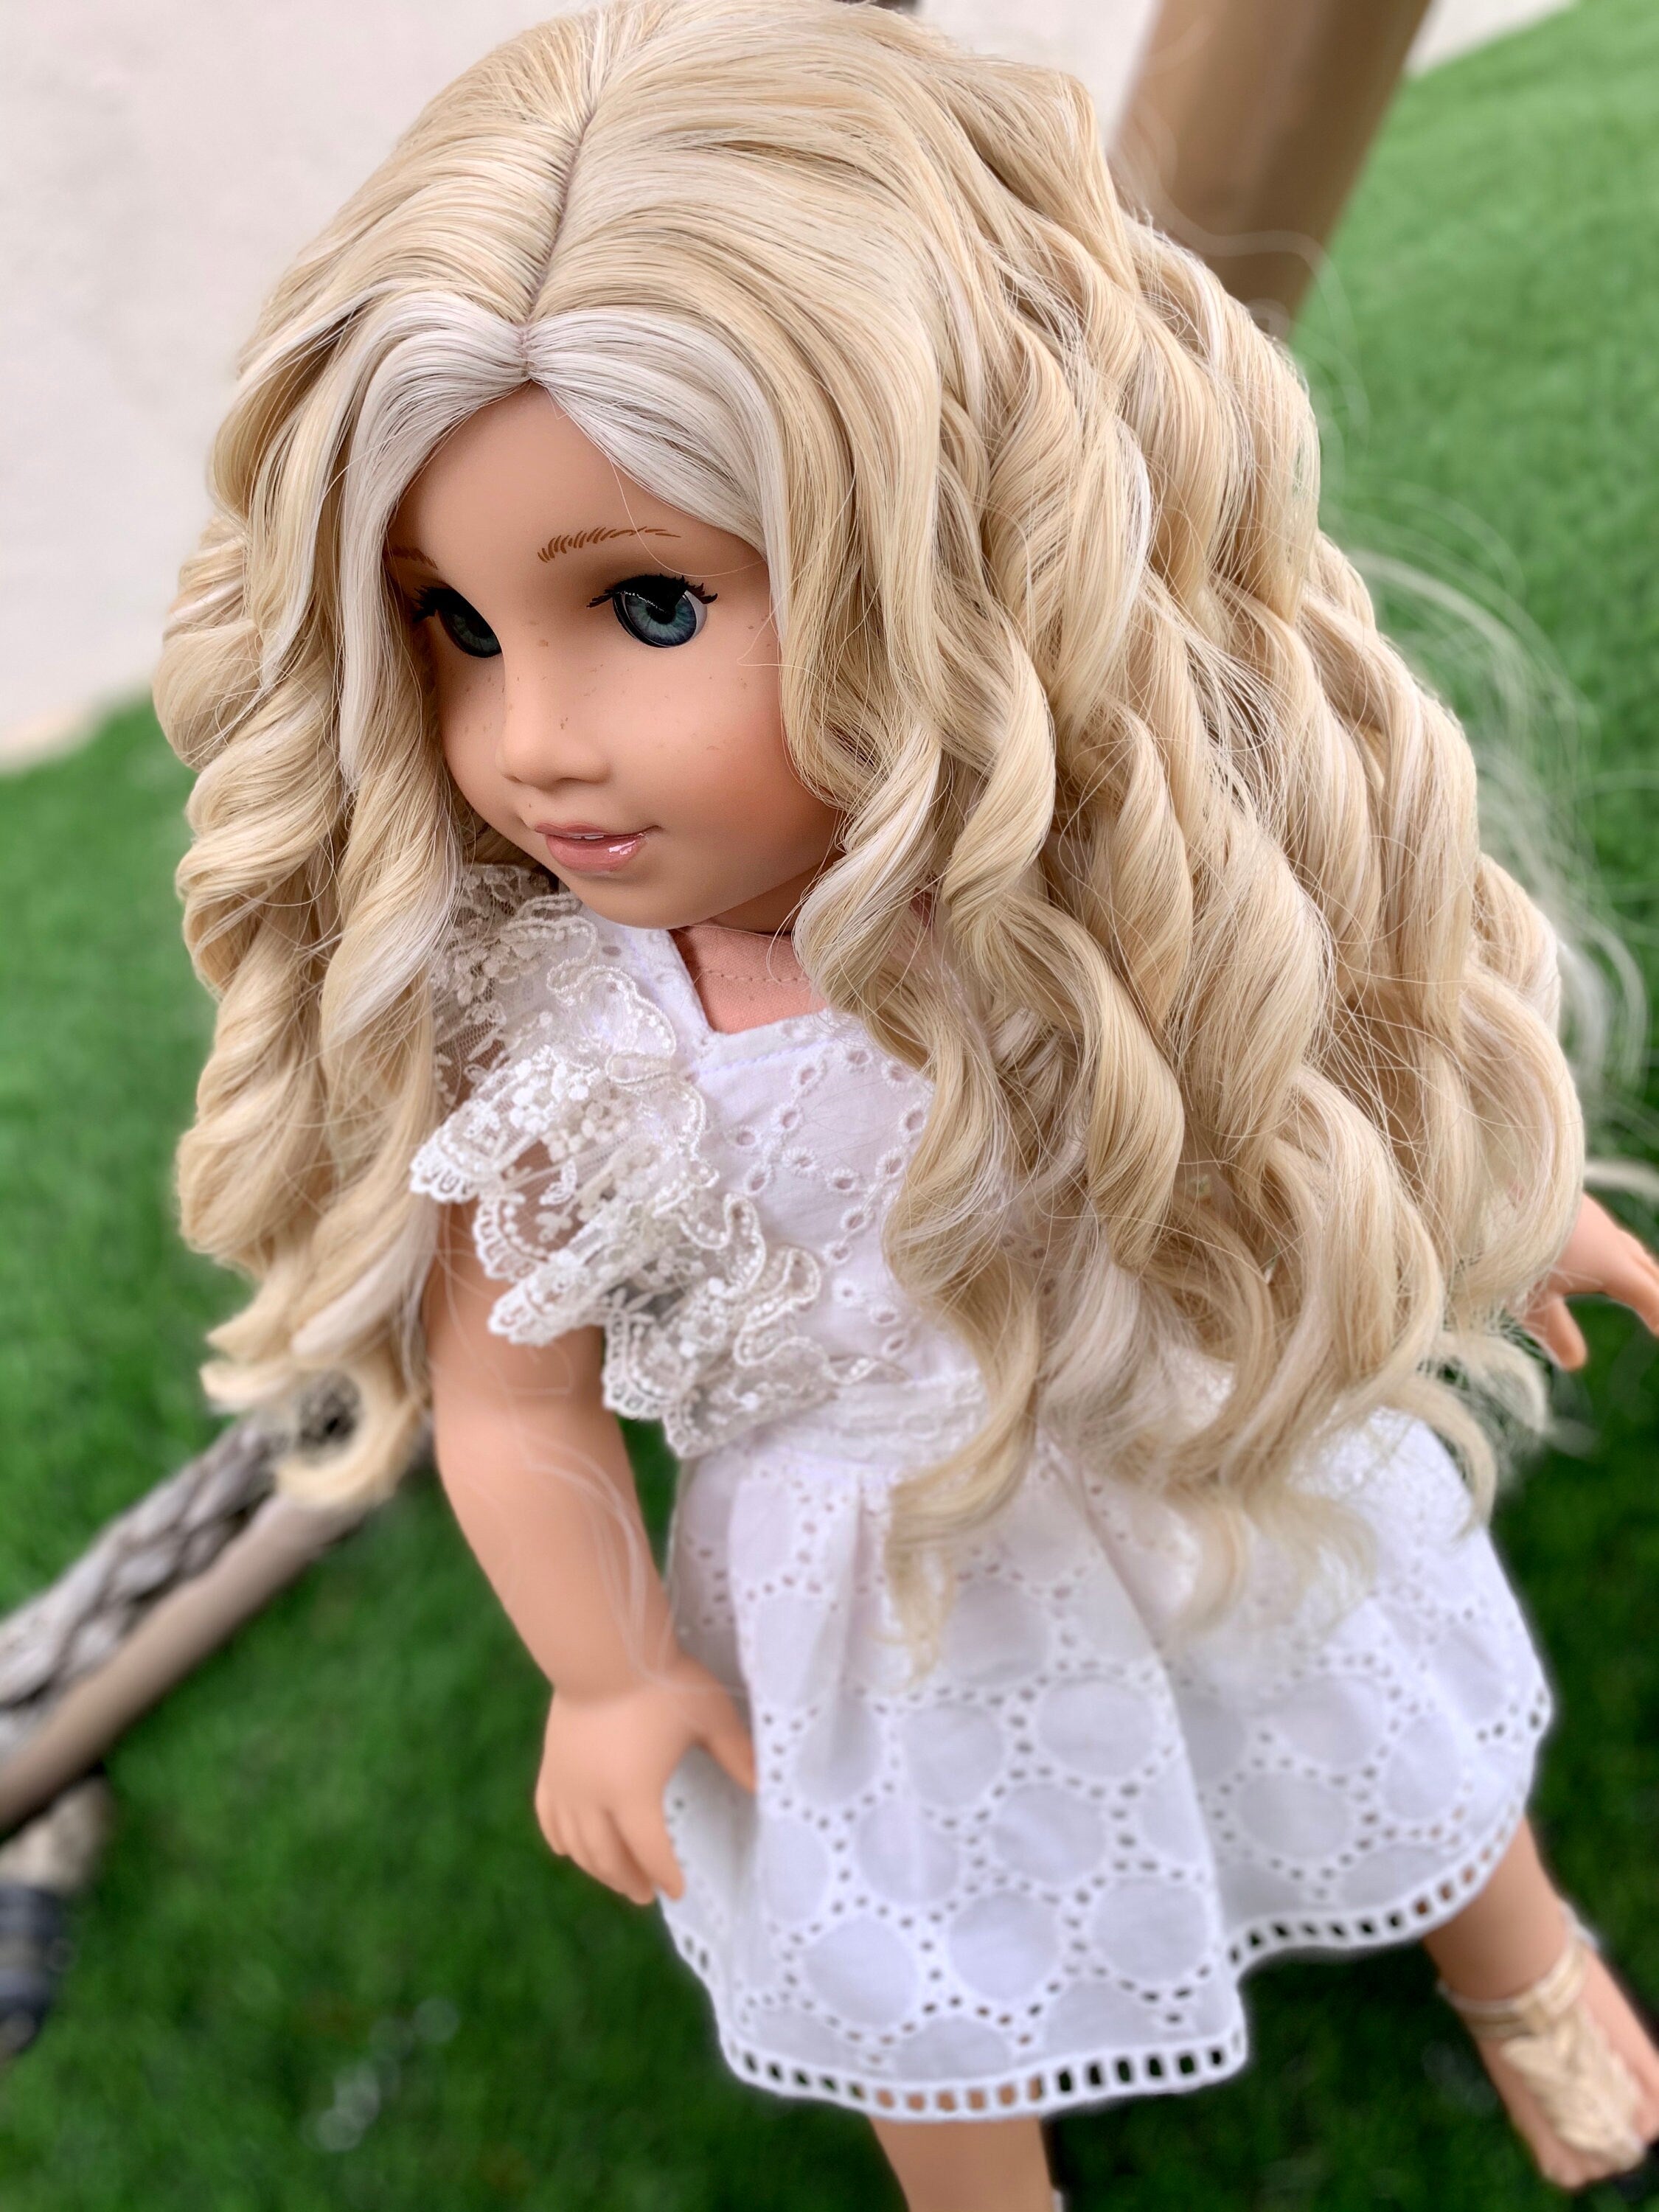 Custom doll wig for 18" American Girl Dolls - Heat Safe- Tangle Resistant - fits 10-11" head size of 18" dolls OG Blythe BJD Gotz Blonde